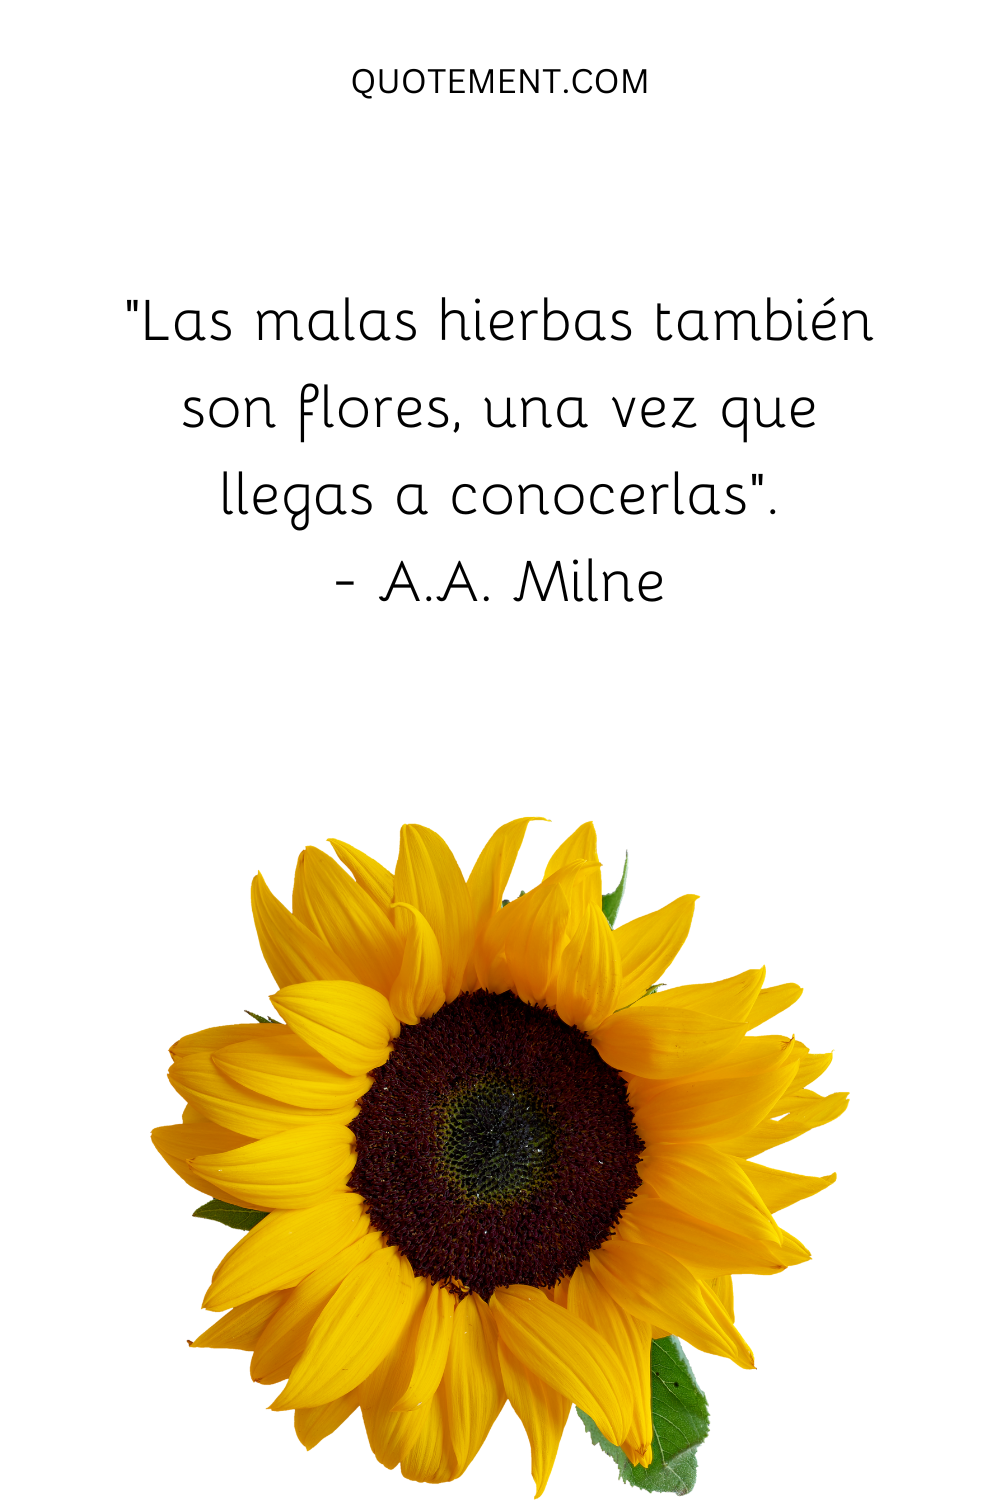 "Las malas hierbas también son flores, una vez que llegas a conocerlas". - A.A. Milne